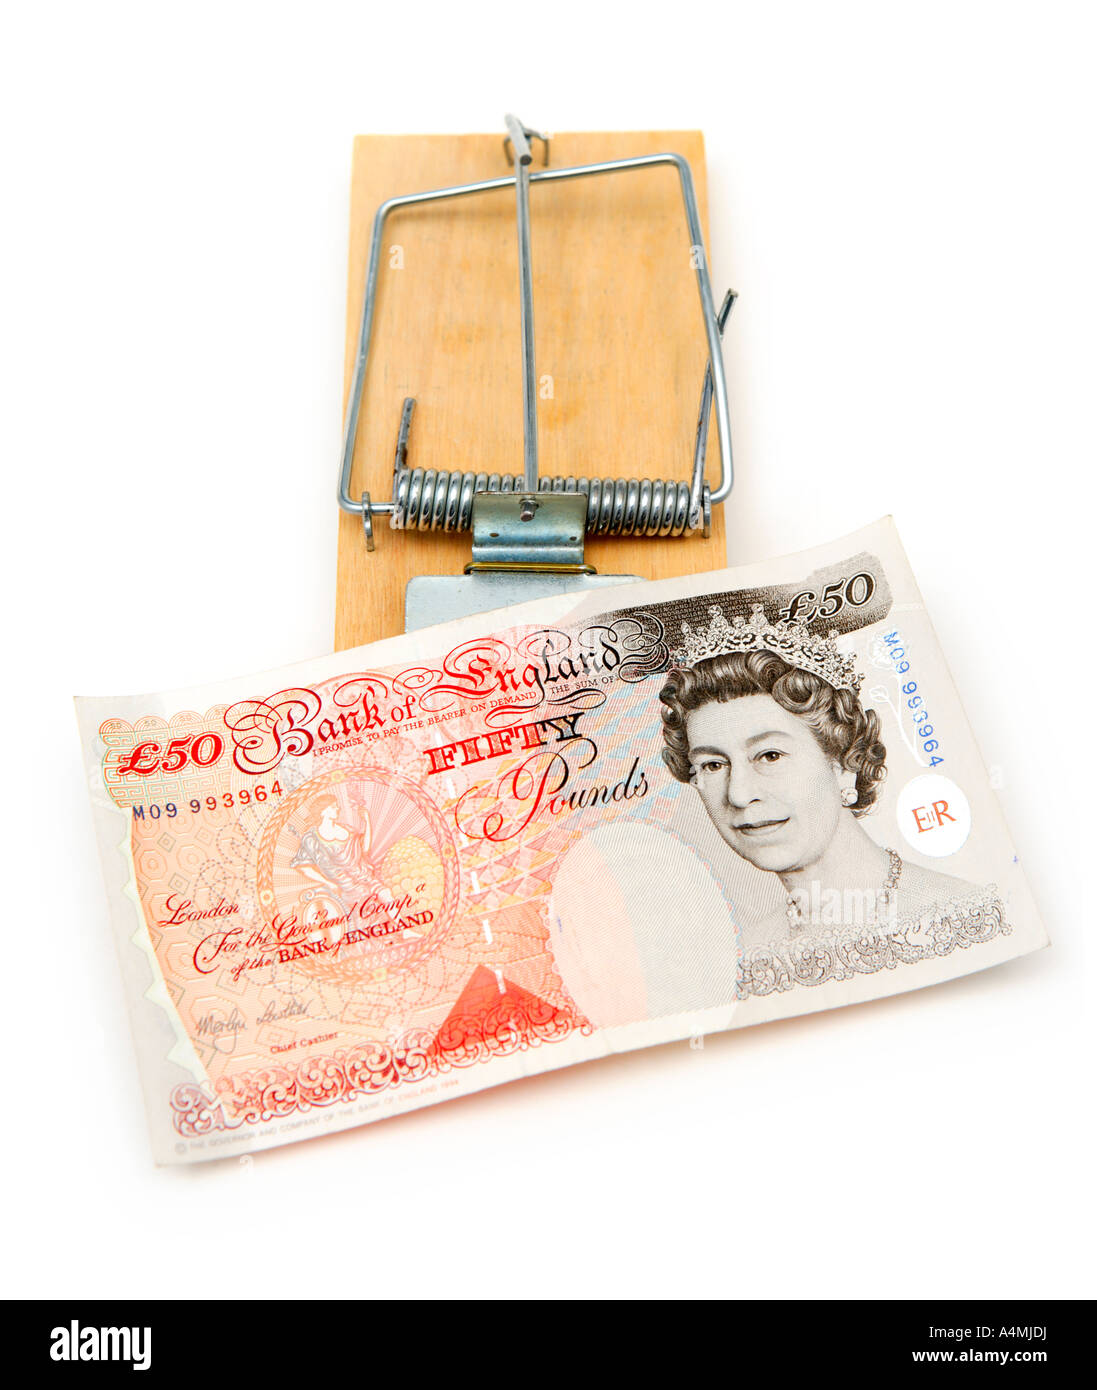 Ratonera con moneda inglesa indicando dinero trampa Foto de stock